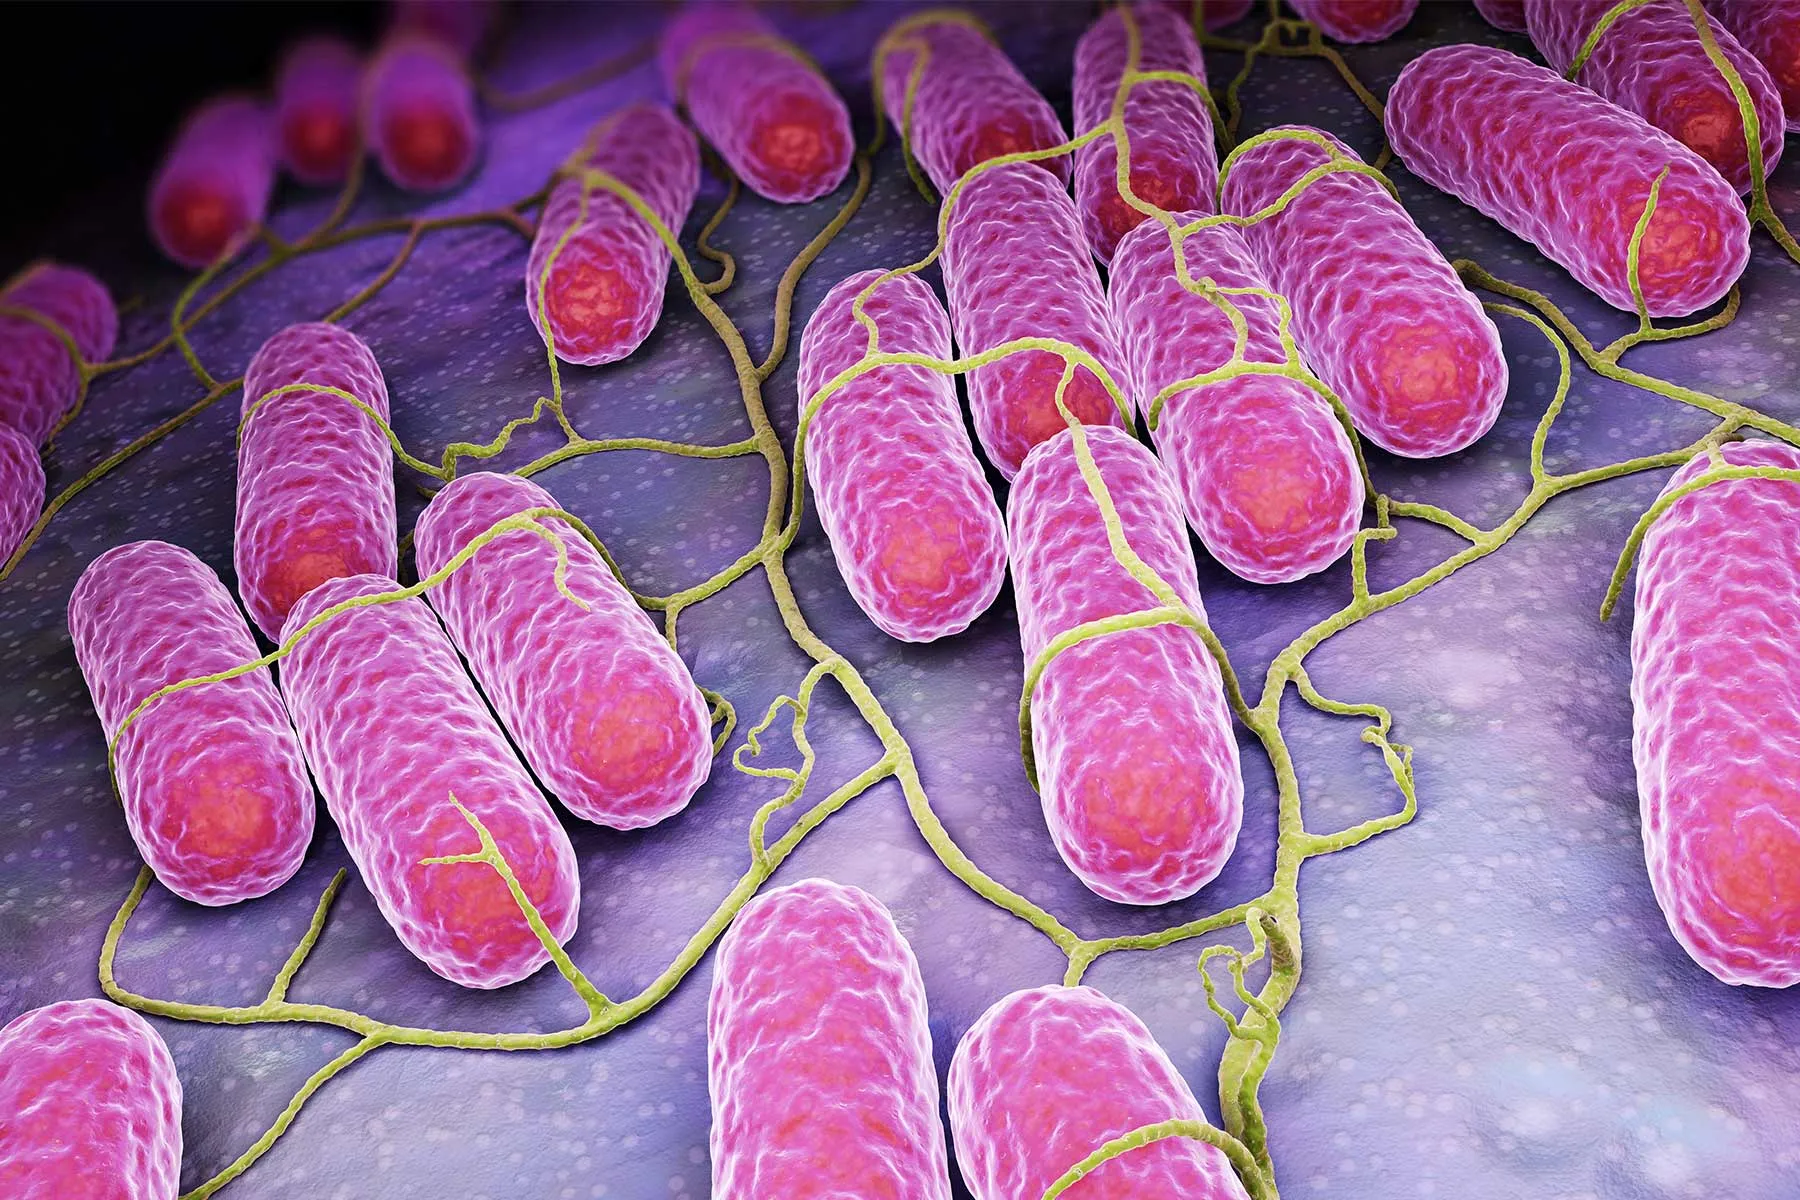 salmonella bacteria